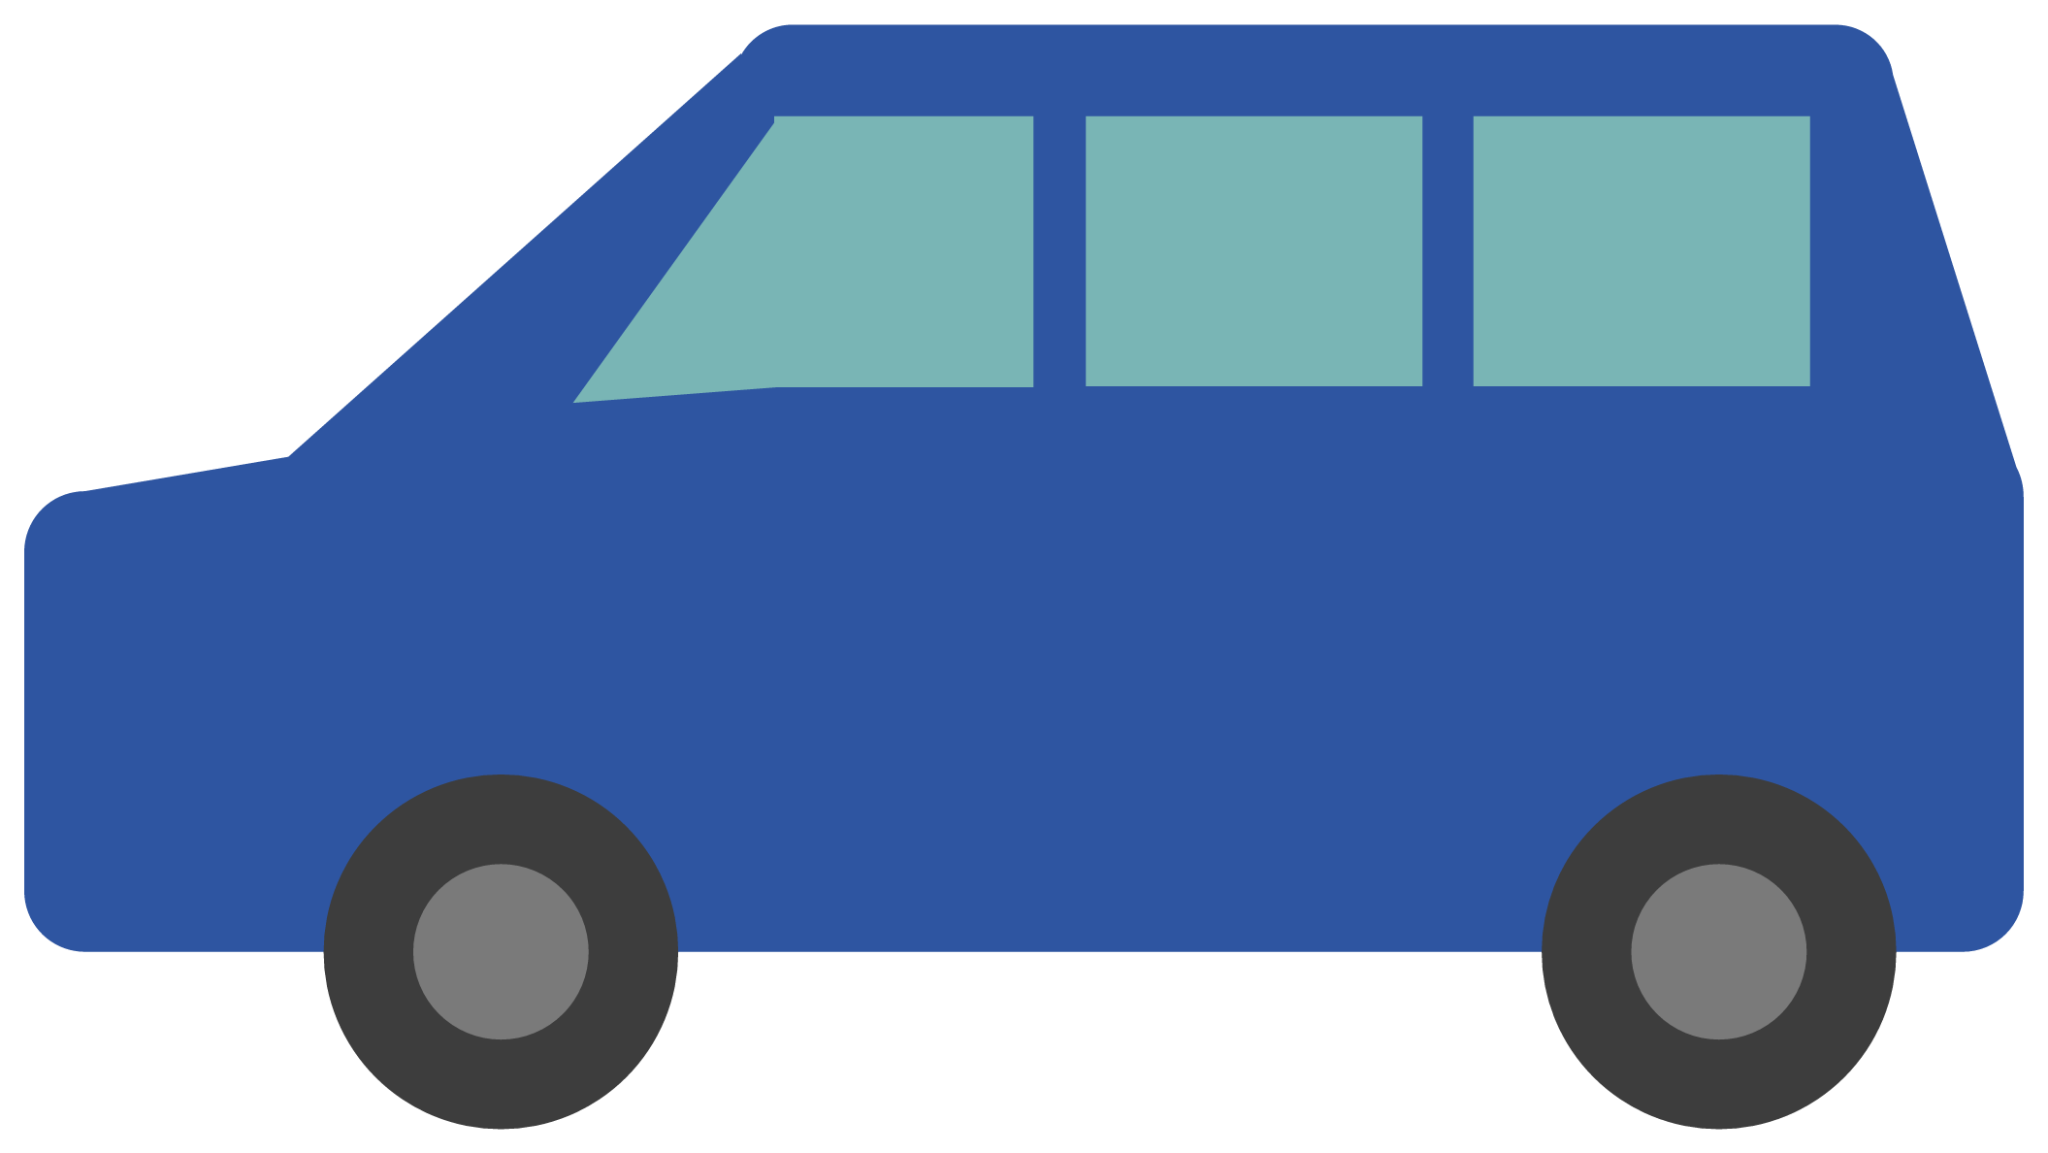 car blue icon